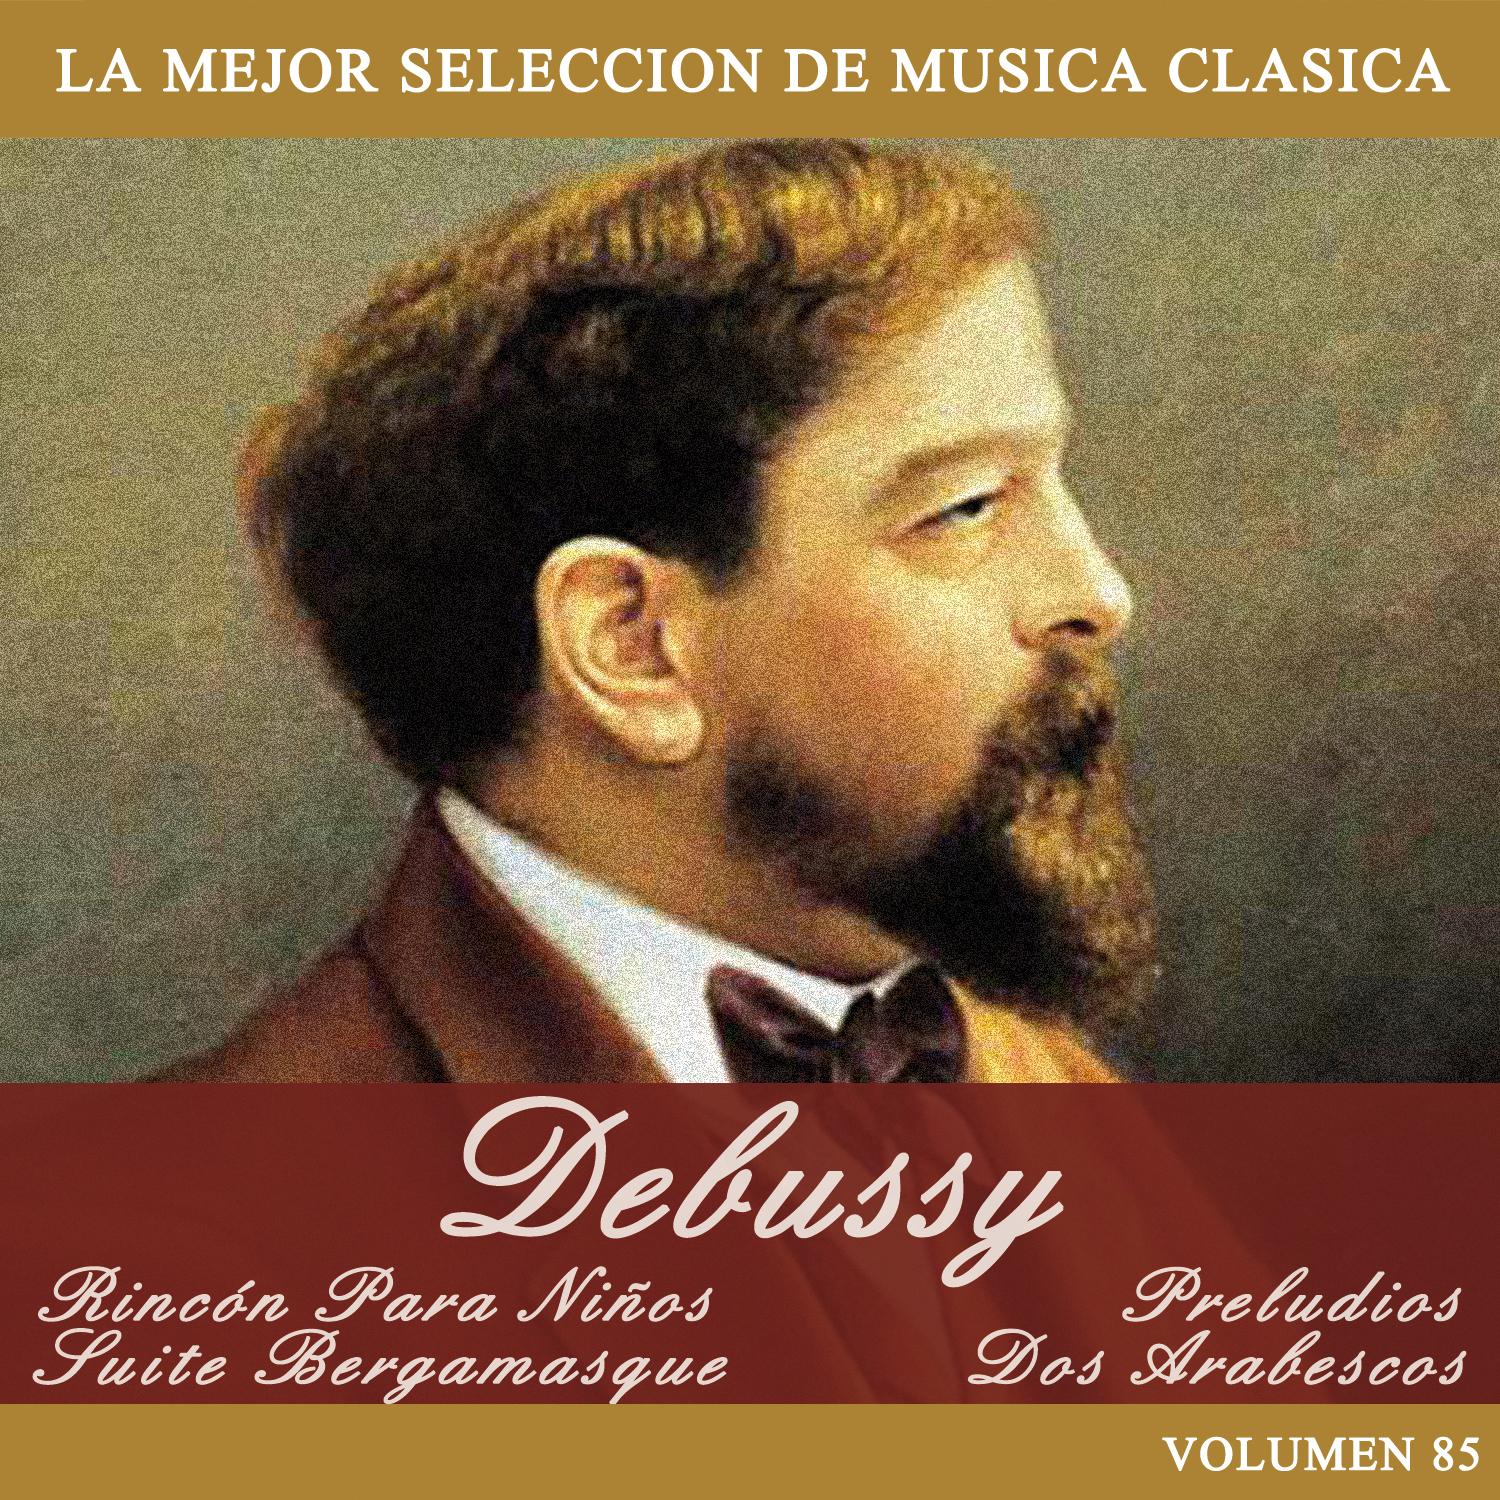 Debussy: Rincón Para Niños - Suite Bergamasque - Preludios - Dos Arabescos